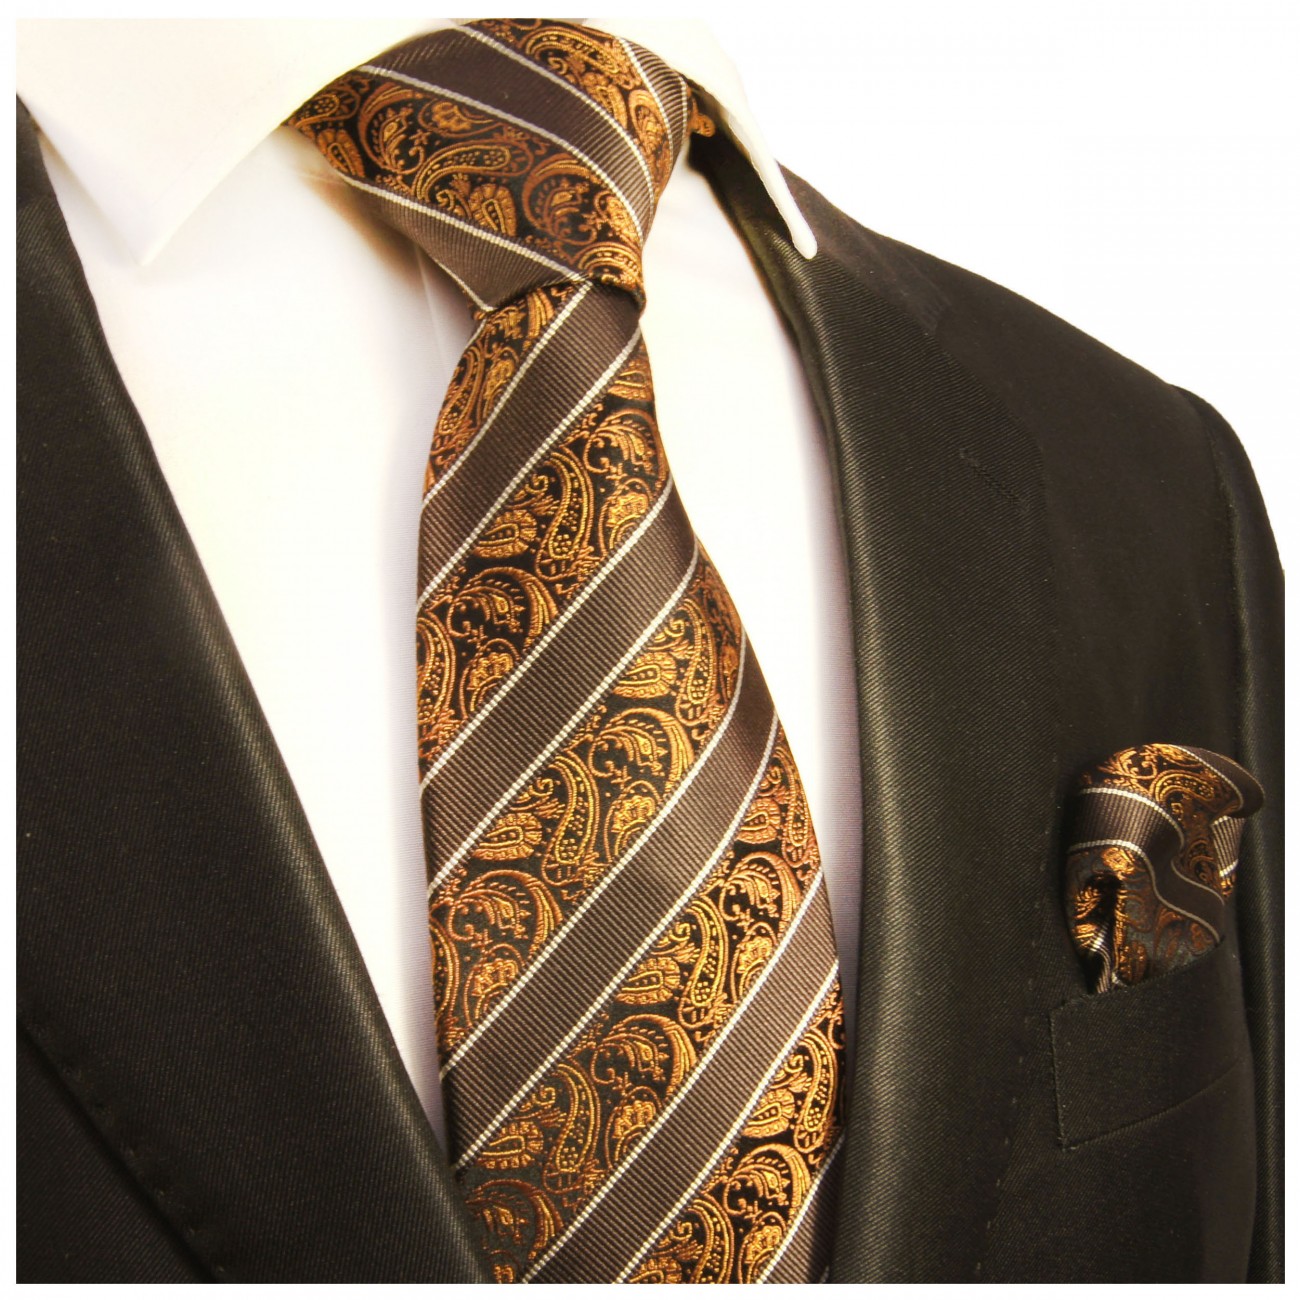 Krawatte braun paisley gestreift mit Einstecktuch